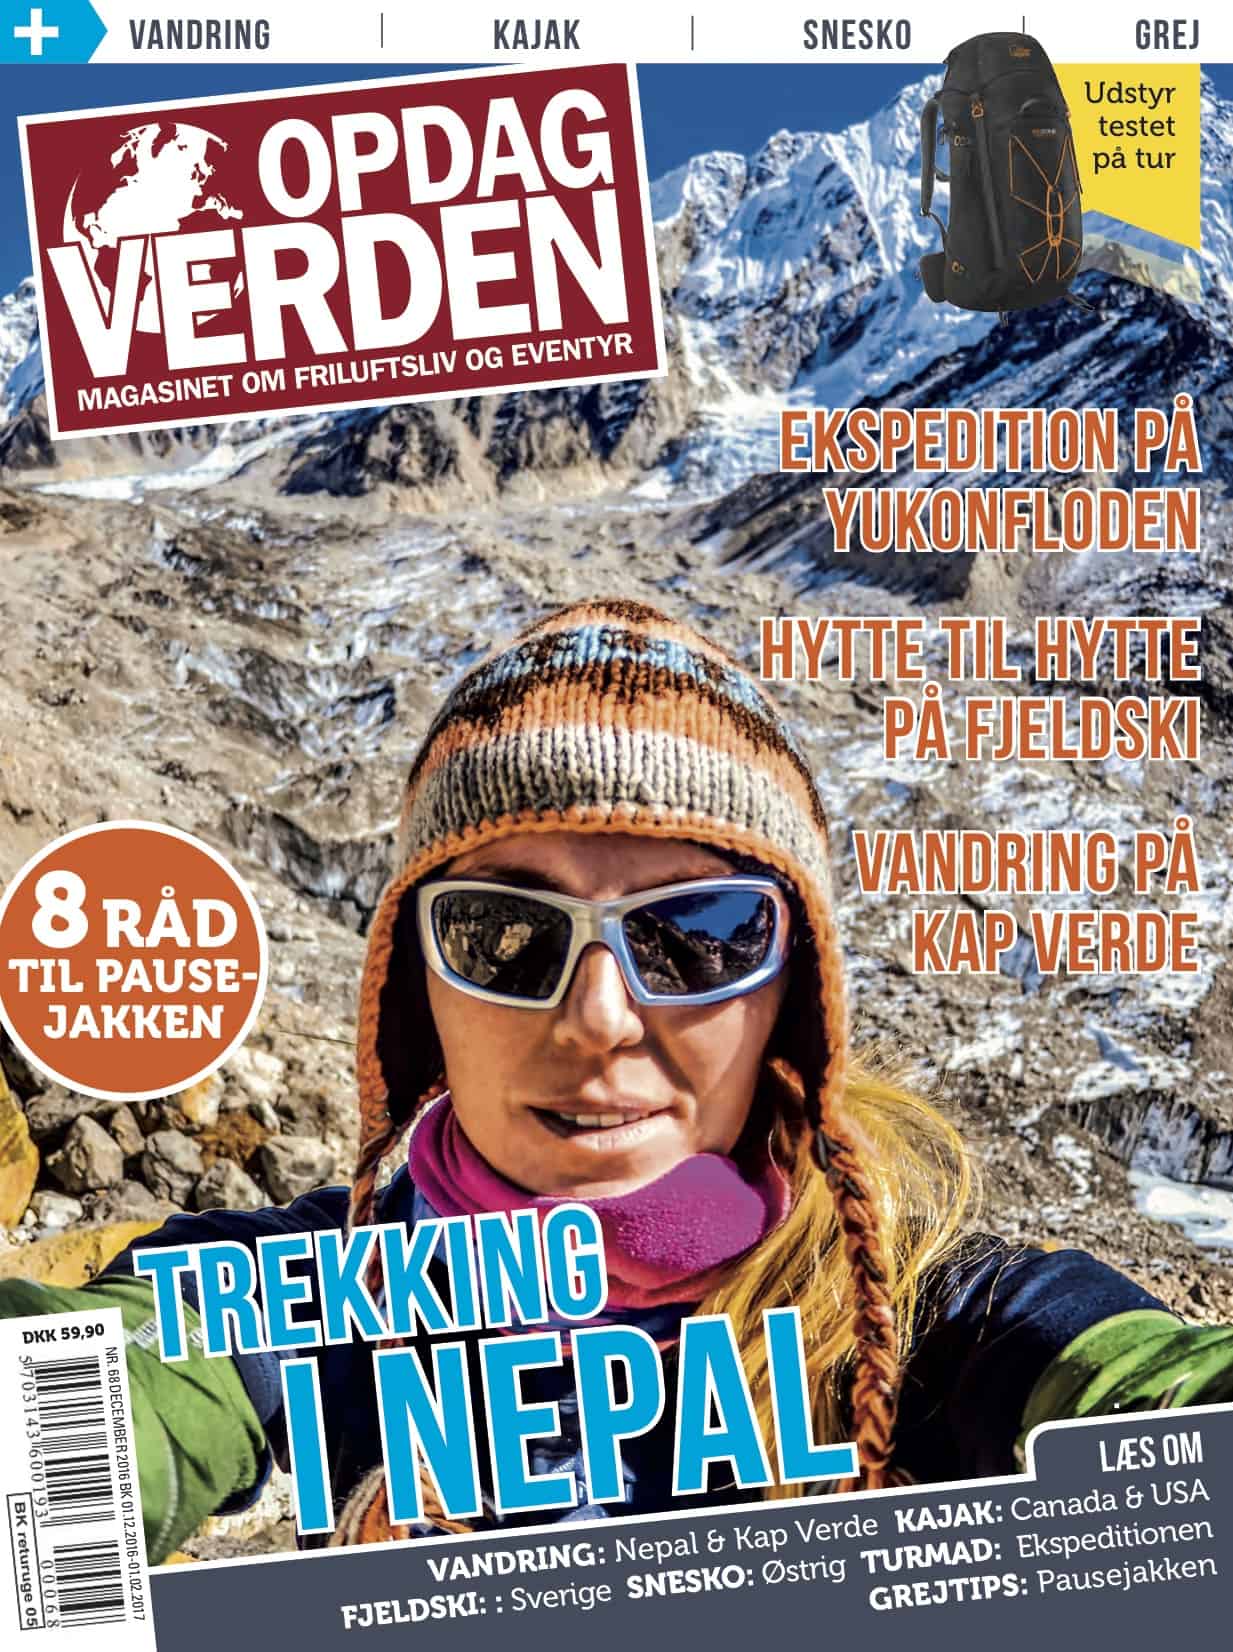 Coverbillede - Opdag Verden nr. 68 - December 2016